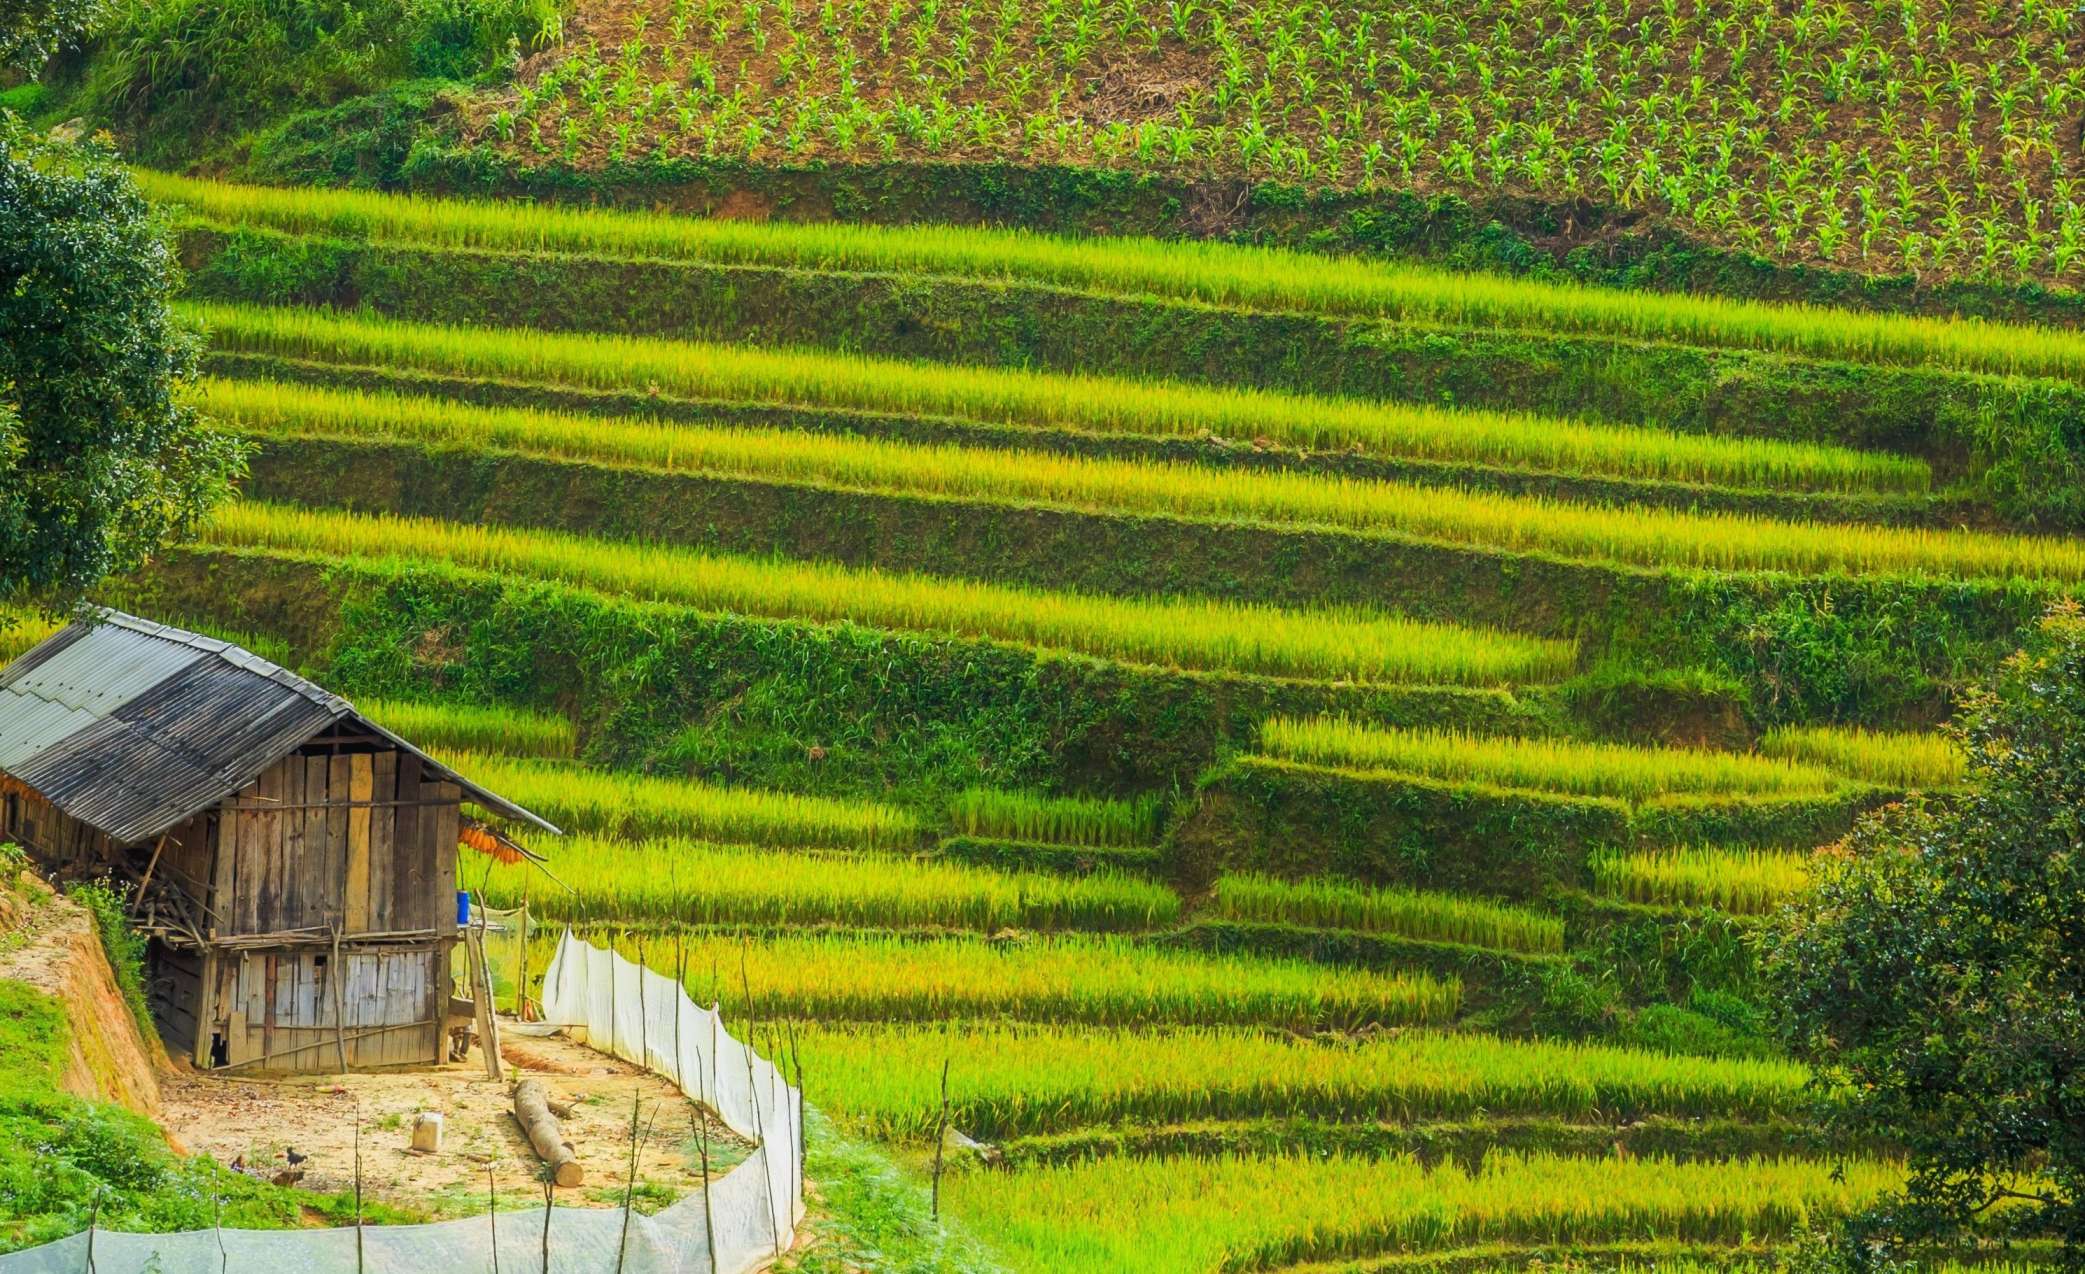 Les rizières au Viêt Nam.